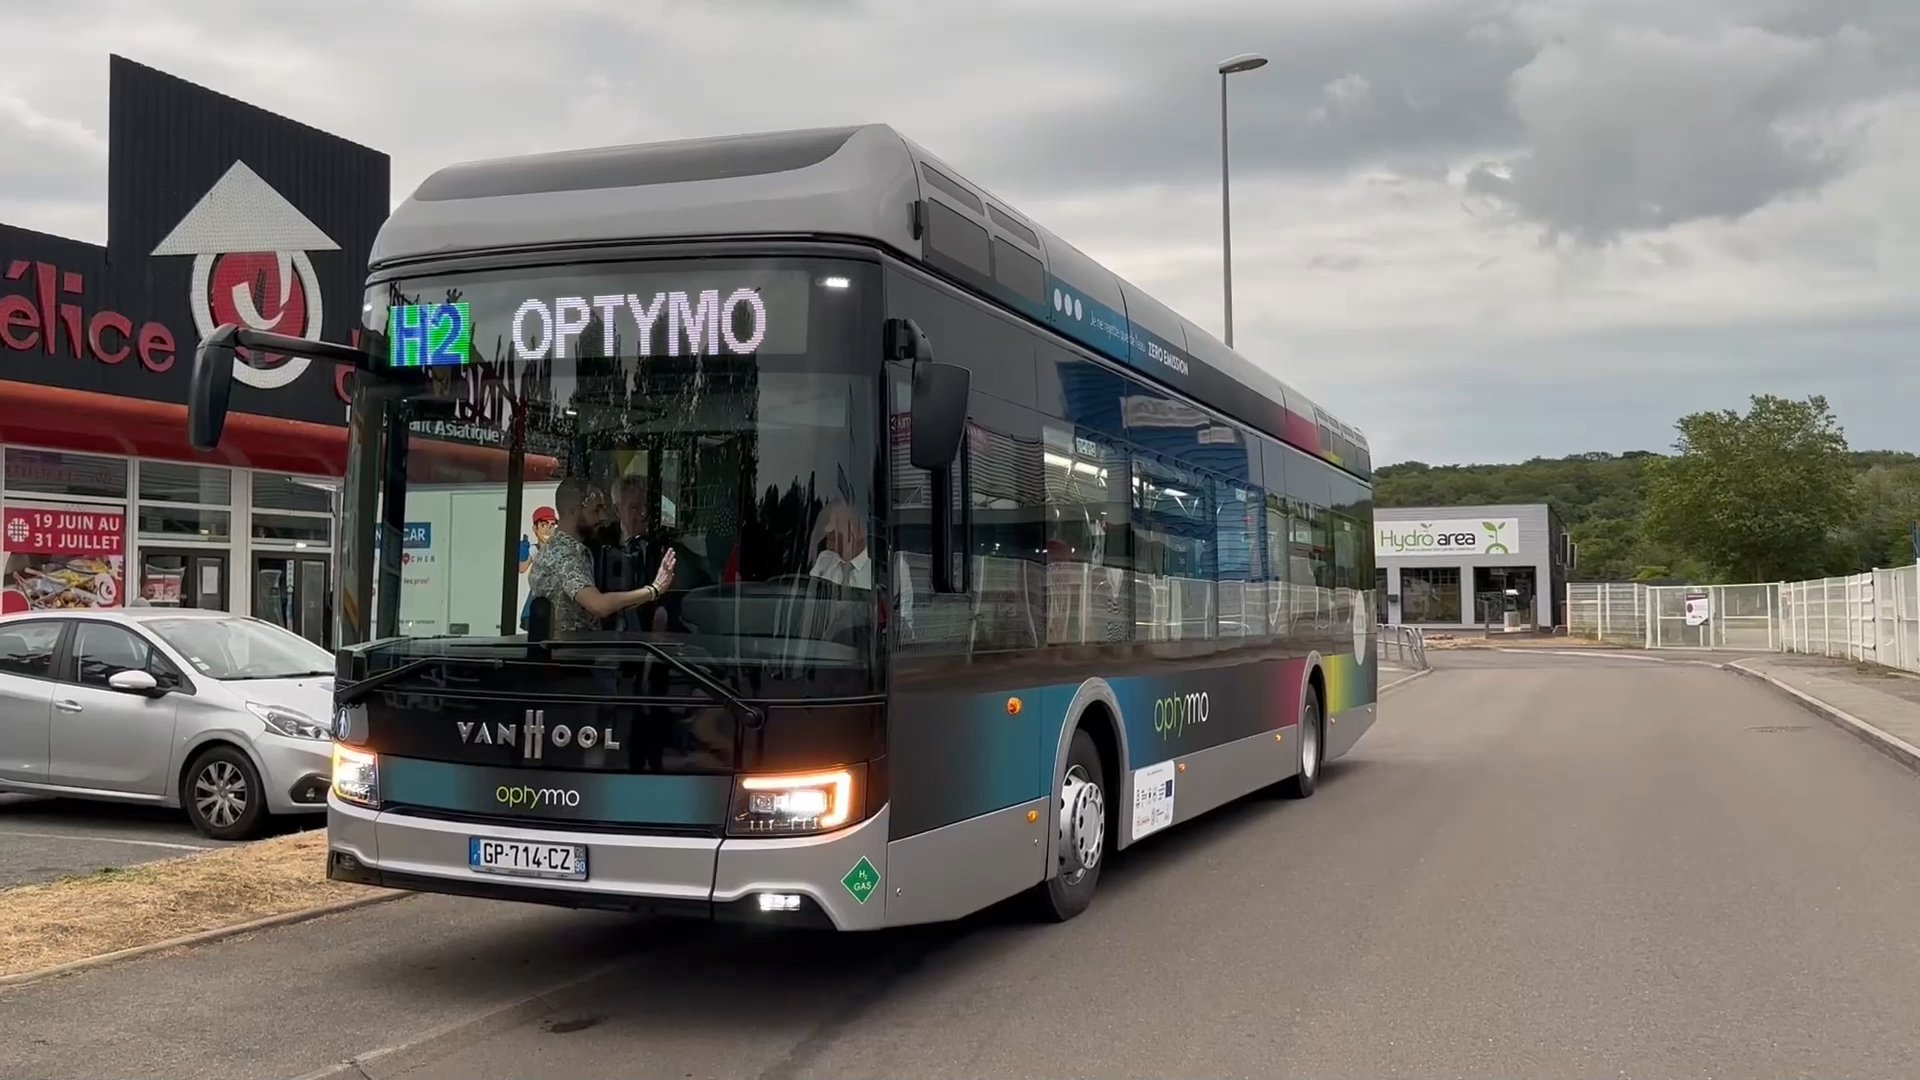 La Ratp teste son premier bus à hydrogène